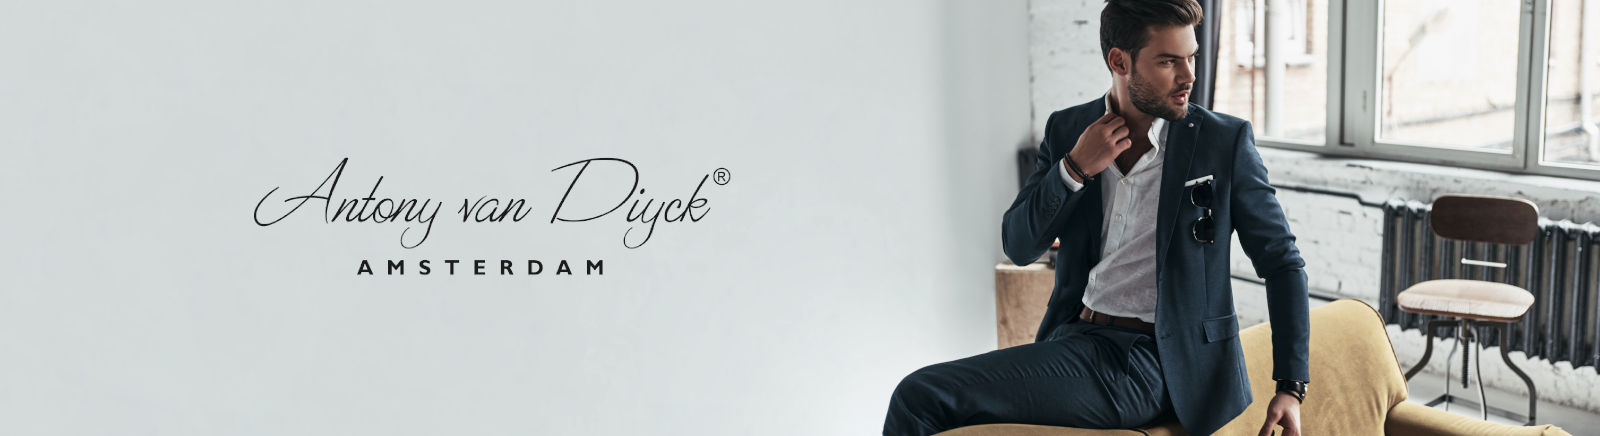 Antony van Diyck Schnürschuhe extraweit für Herren im Online-Shop von GISY kaufen